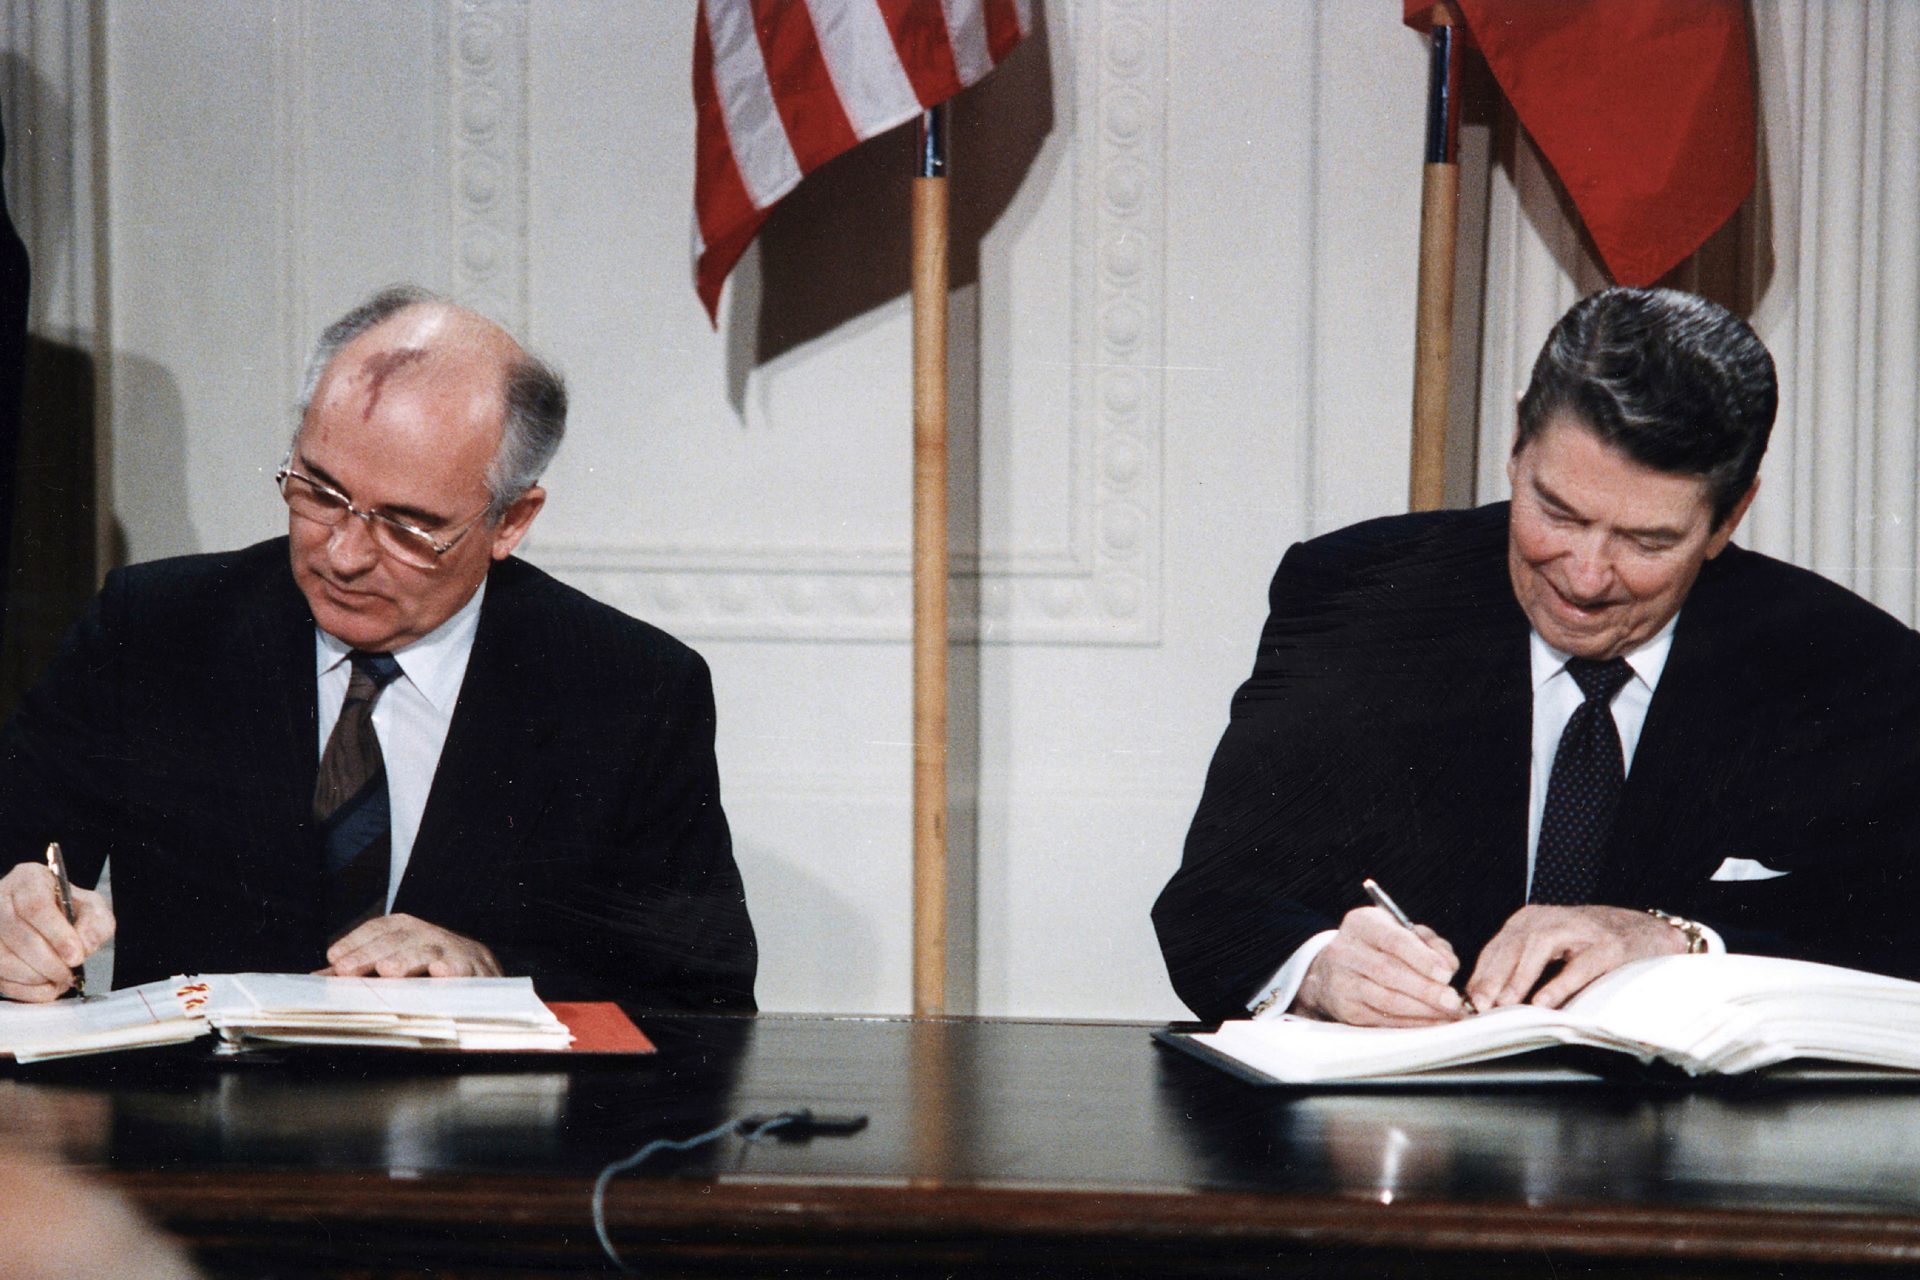 A CIA teria analisado f e z e s de Gorbachev